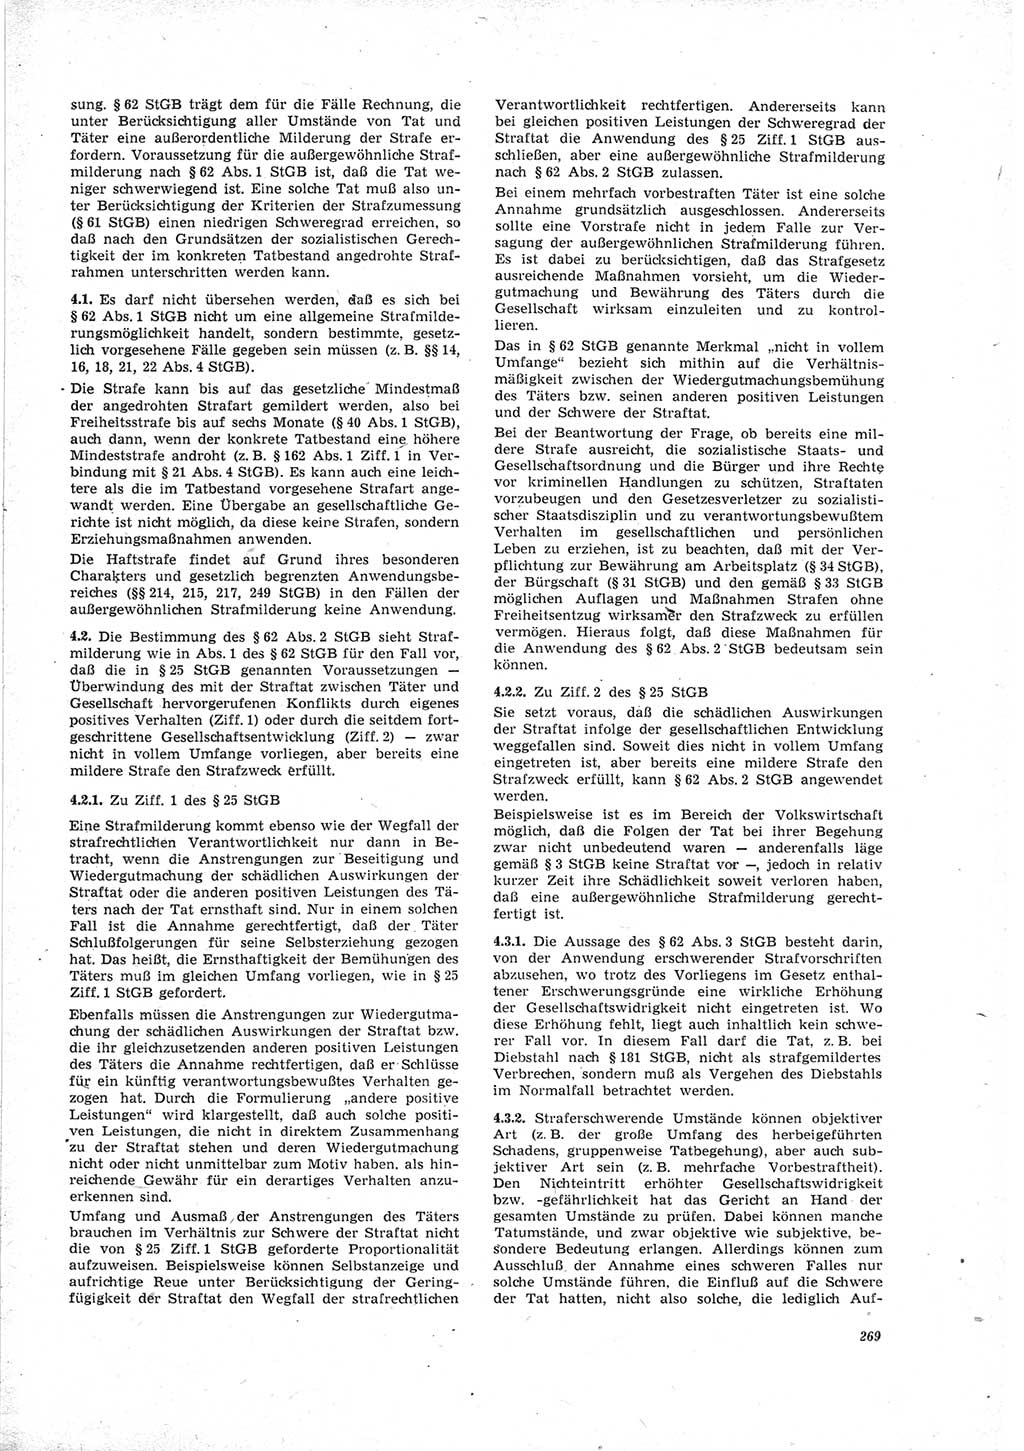 Neue Justiz (NJ), Zeitschrift für Recht und Rechtswissenschaft [Deutsche Demokratische Republik (DDR)], 23. Jahrgang 1969, Seite 269 (NJ DDR 1969, S. 269)